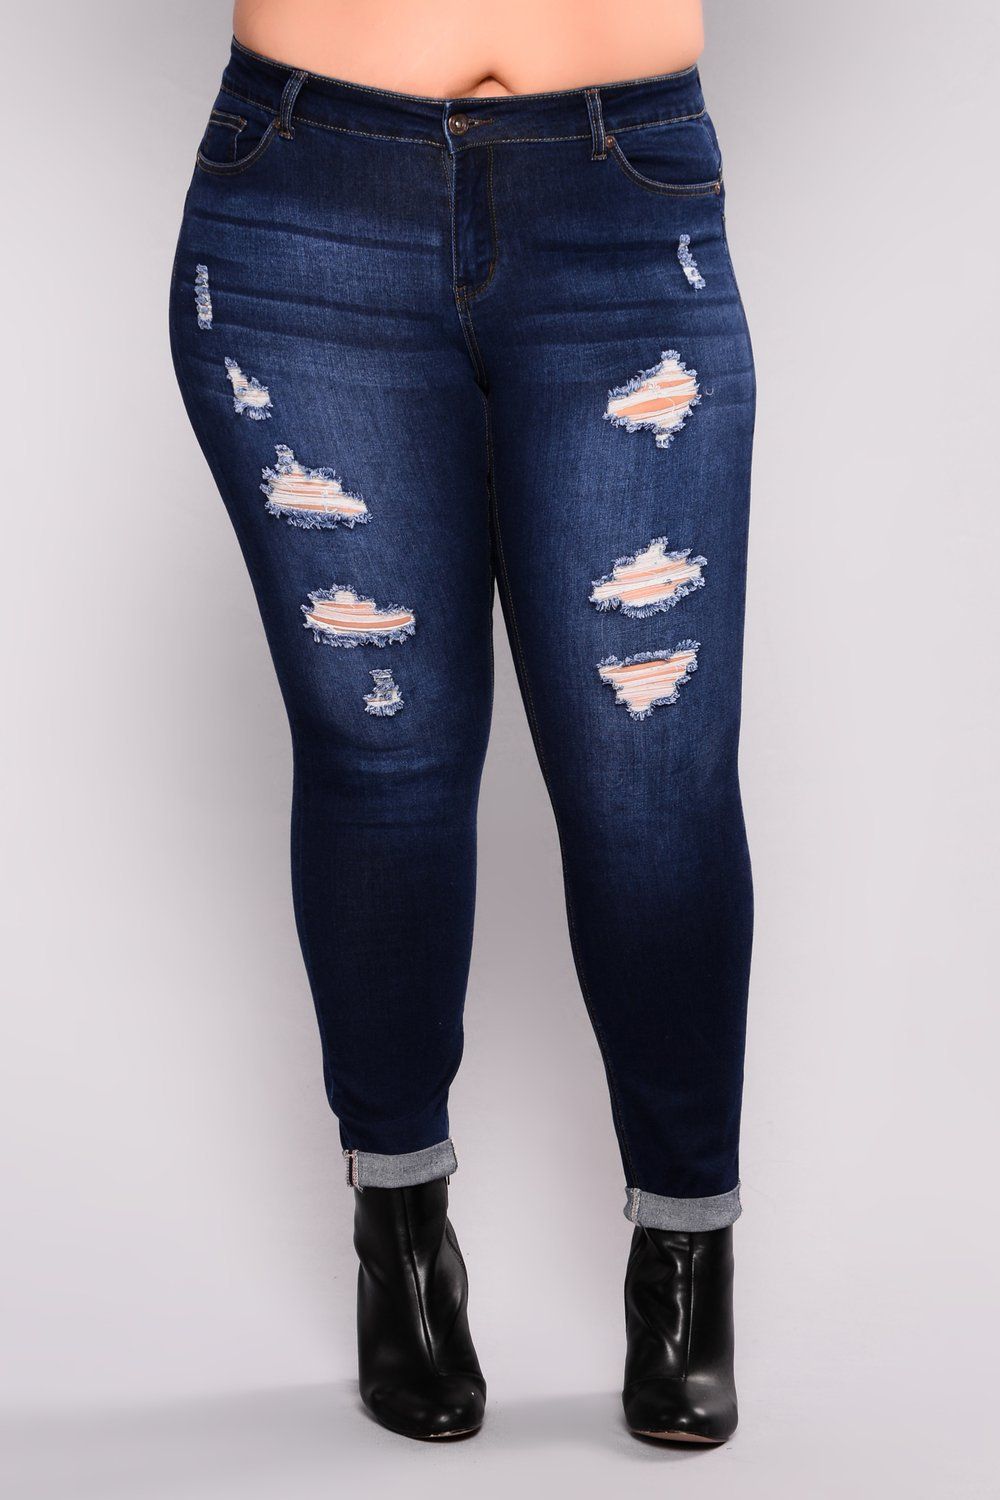 Hot 2018 Nuevas Señoras De Moda Pantalones De Mezclilla Estiramiento Para Mujer Ripped Skinny Jeans De Cintura Alta Jeans Denim Para Mujer De 18,8 € | DHgate